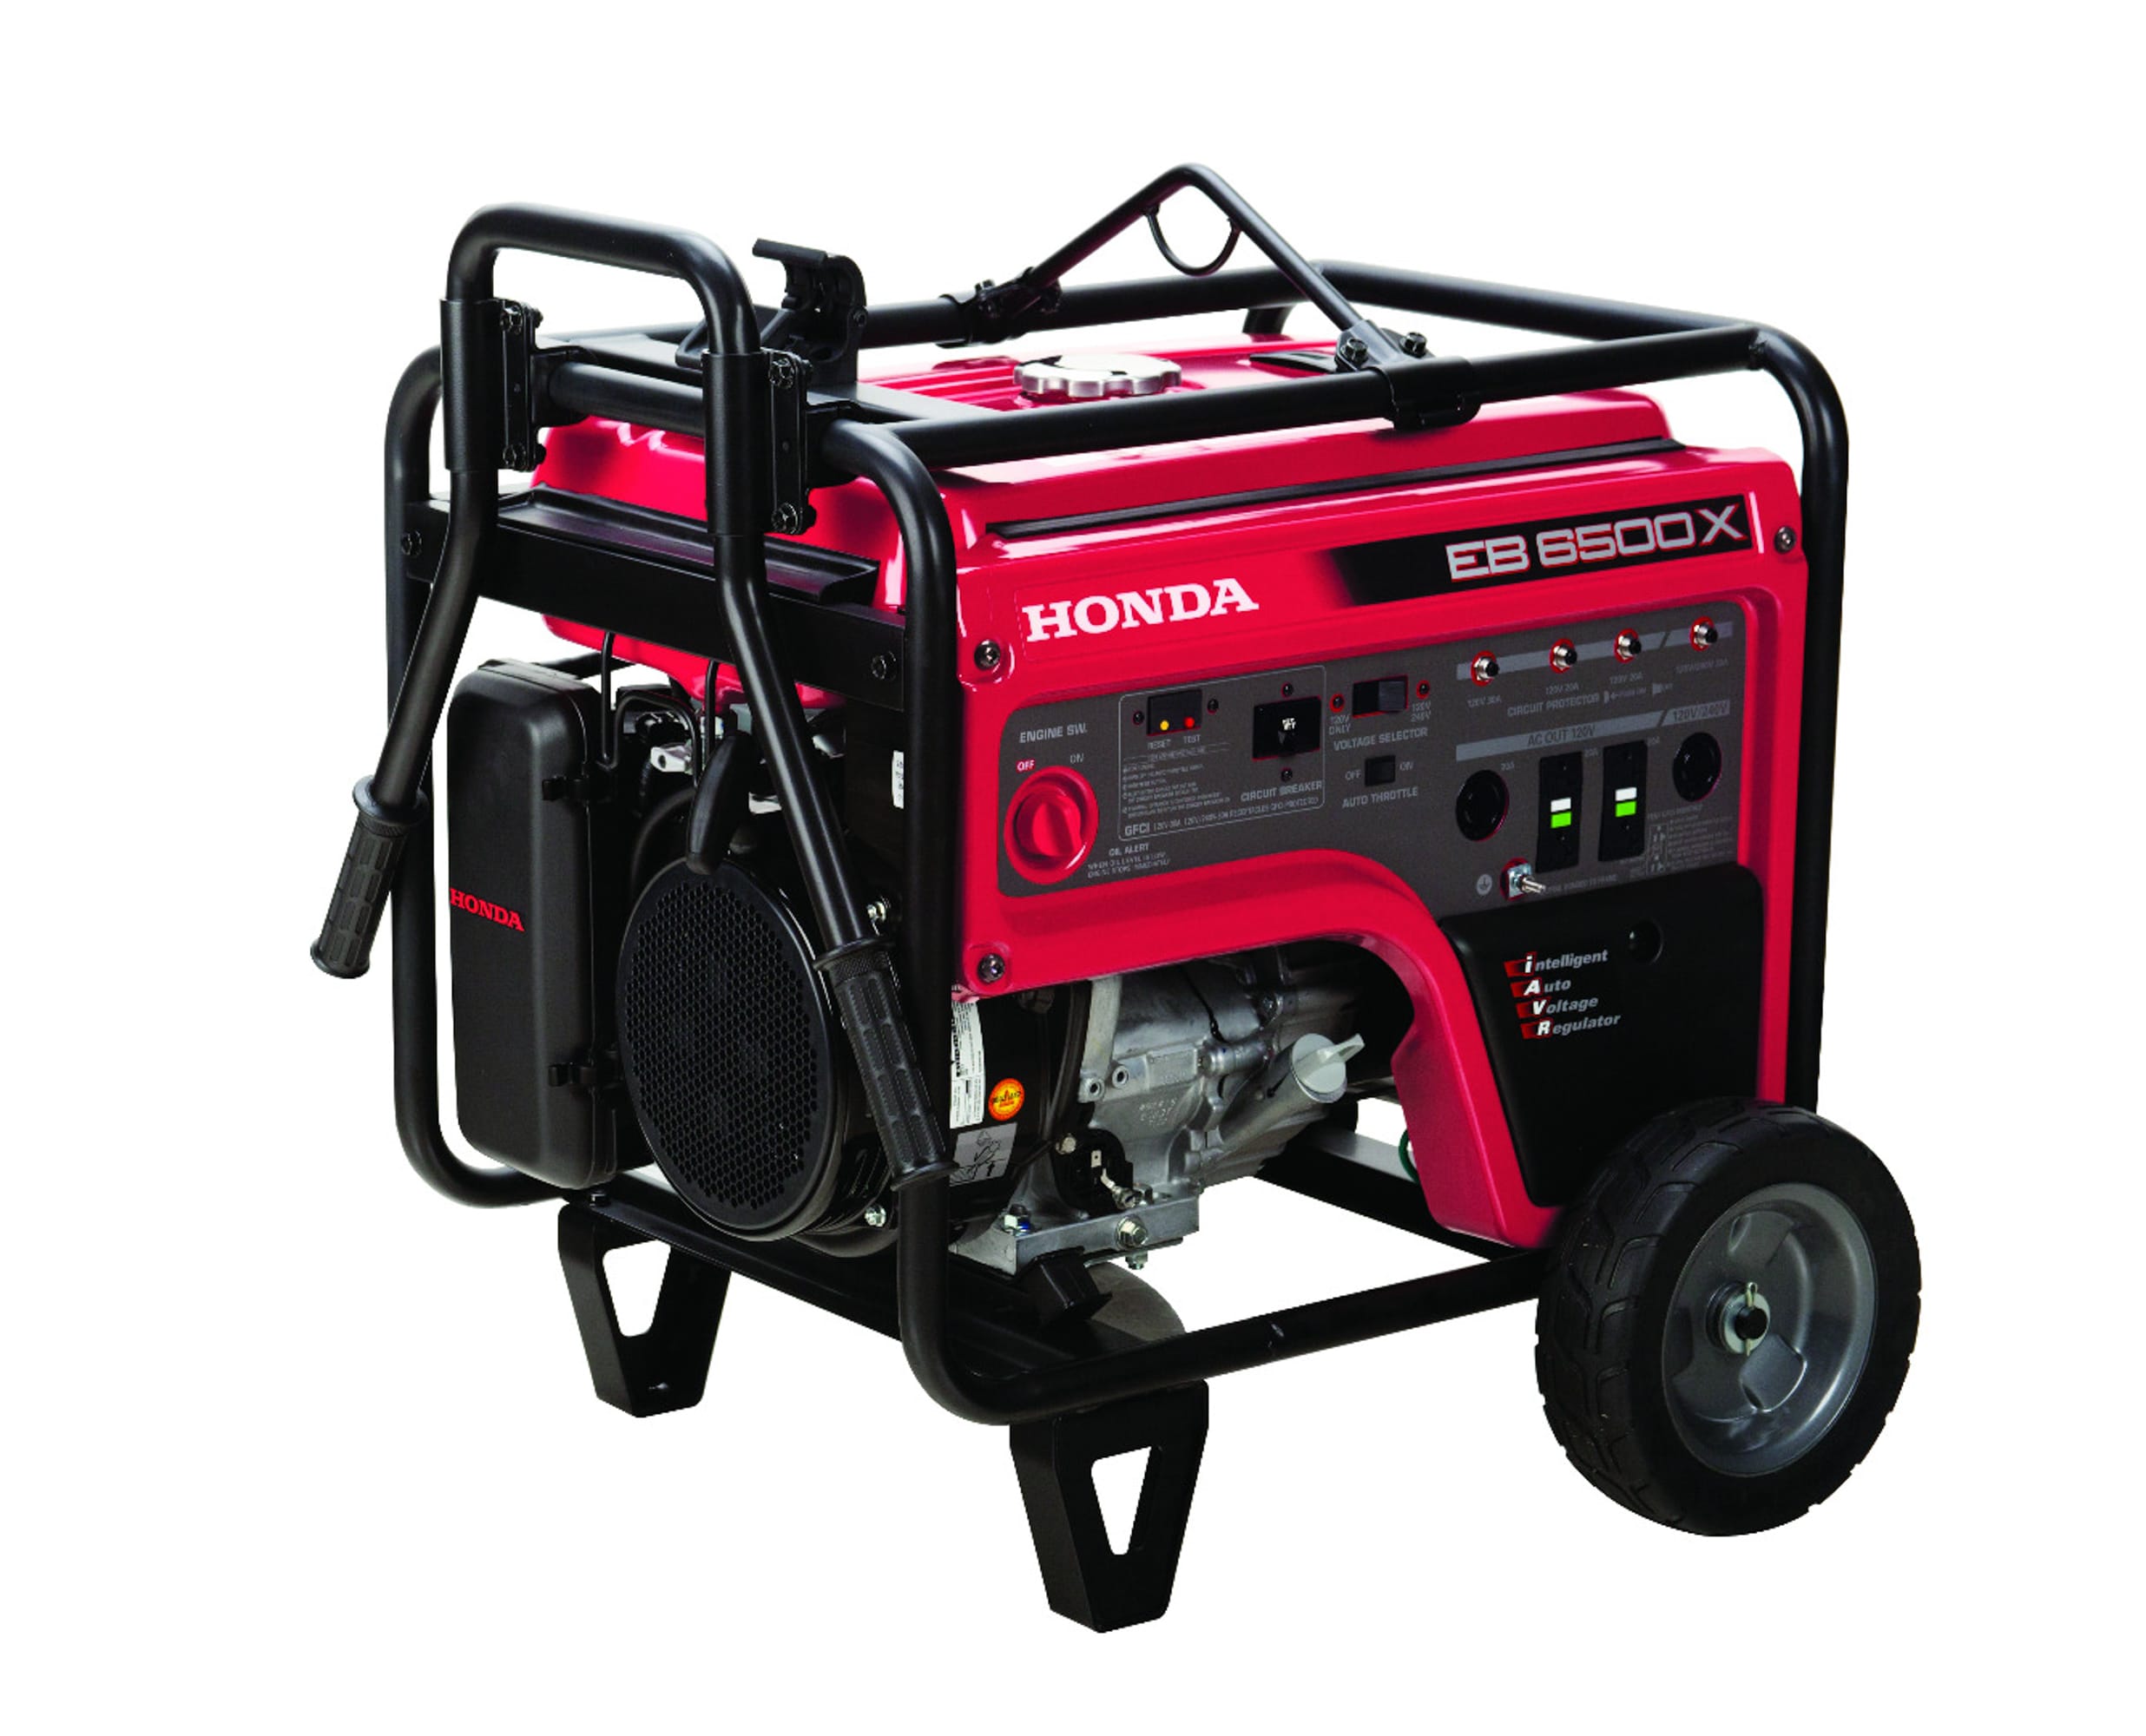 Honda 5500 Generator Features